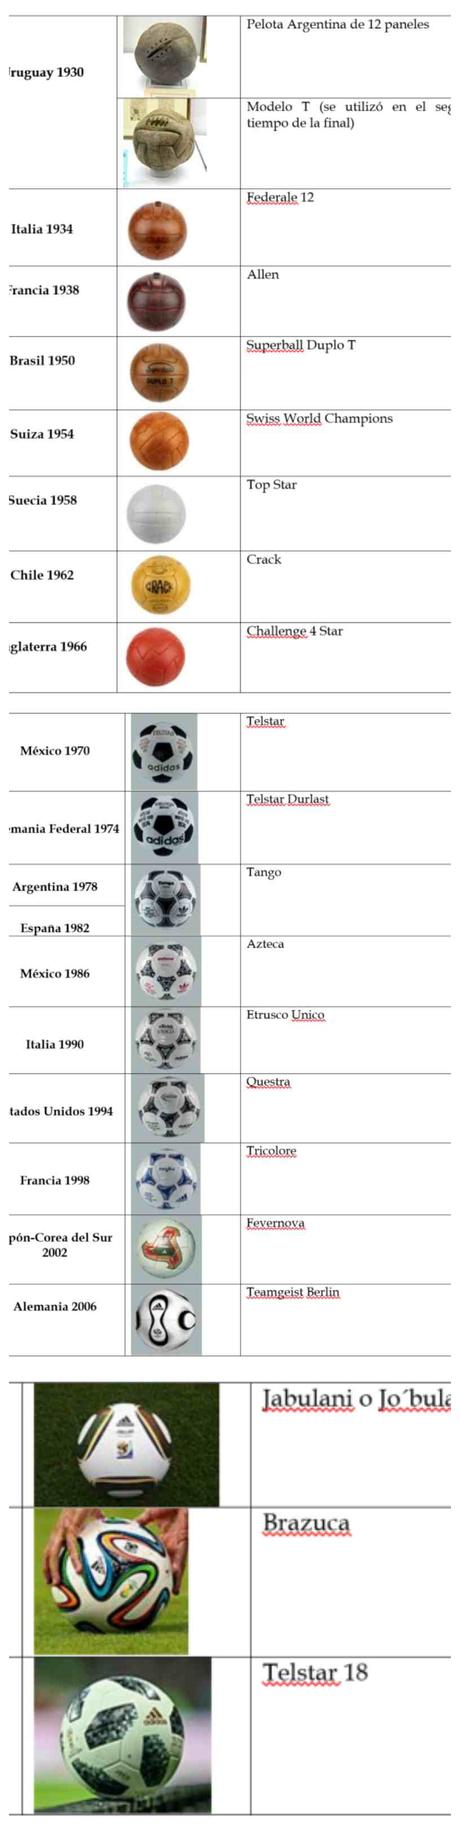 Historia de la pelota de fútbol